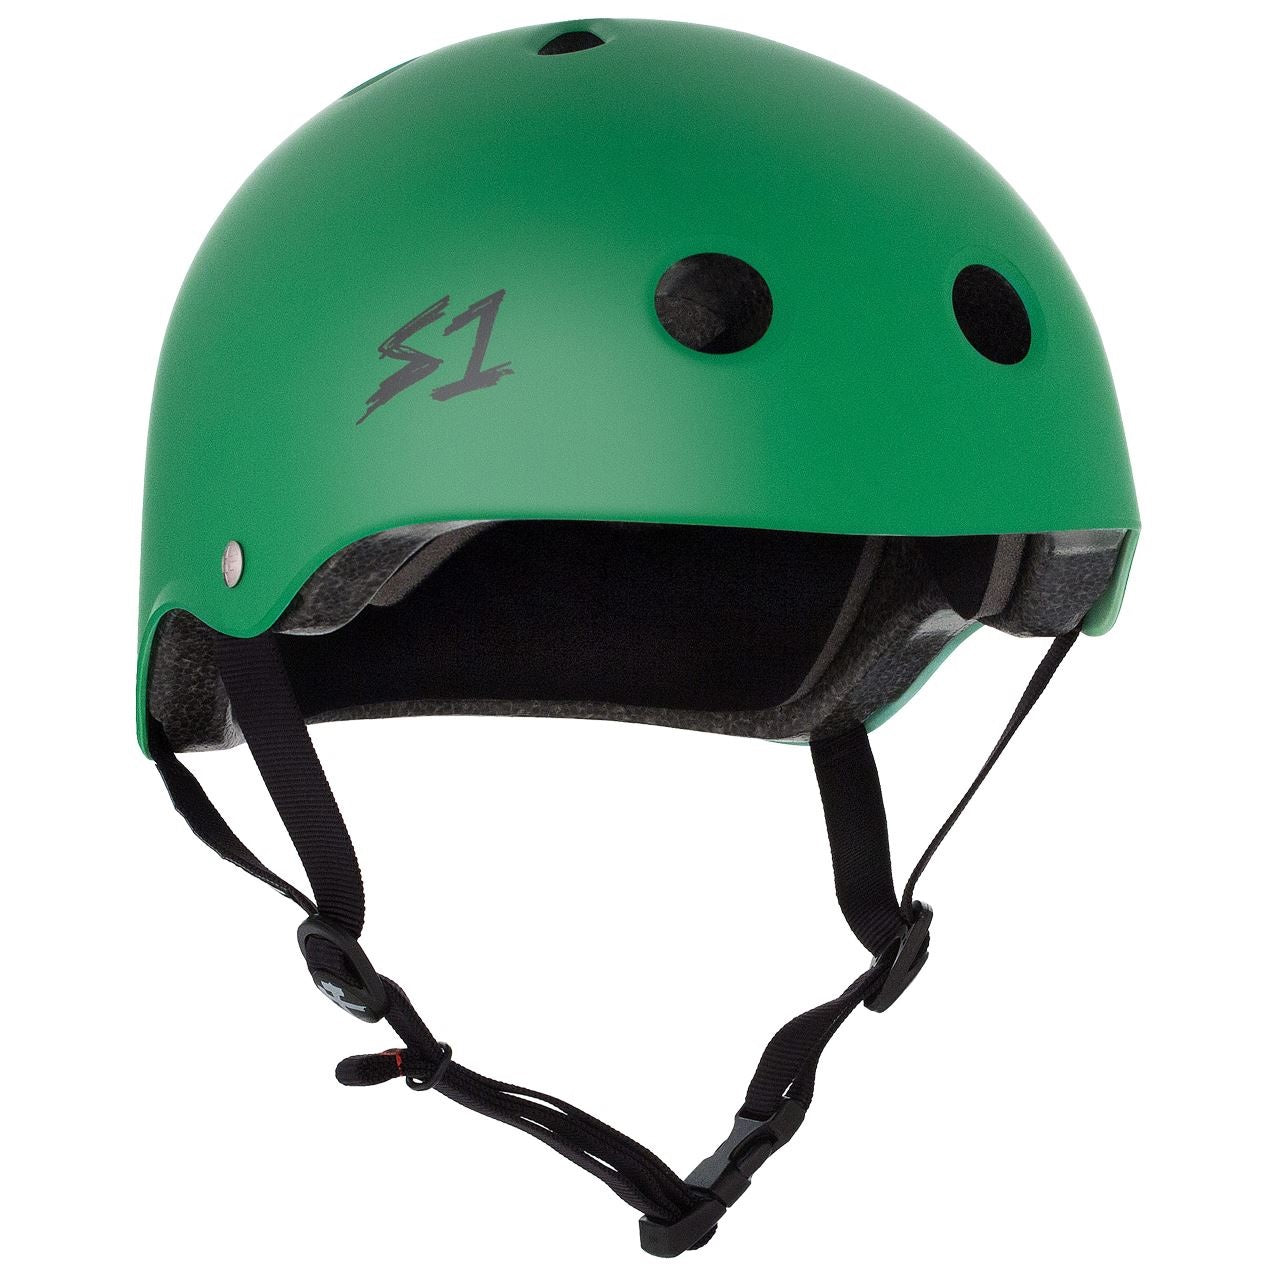 S1 Lifer Helmet - Kelly Green